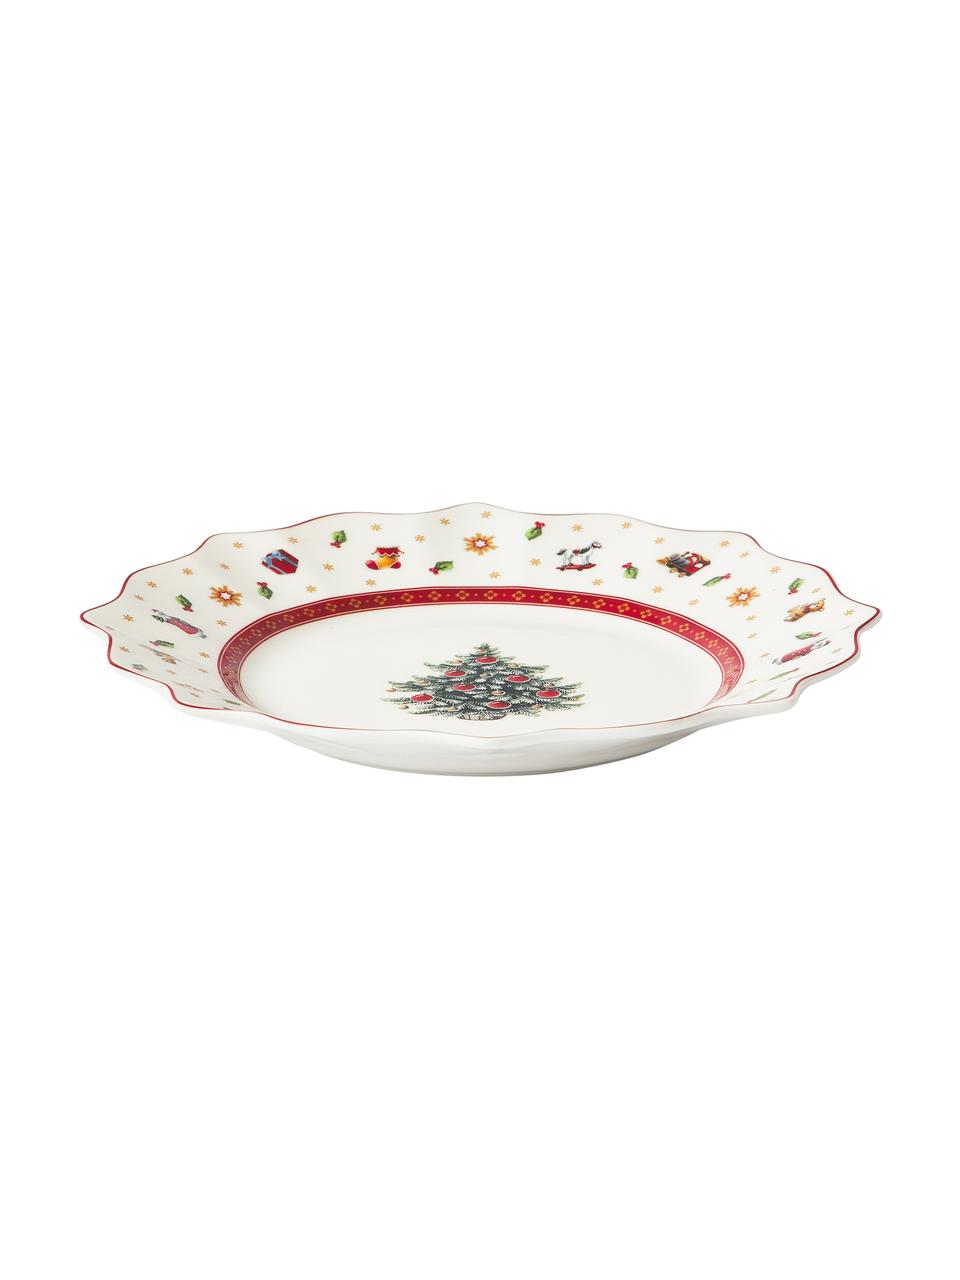 Sada porcelánového nádobí Delight, pro 4 osoby (12 dílů), Prémiový porcelán, Bílá, červená, více barev, Sada s různými velikostmi